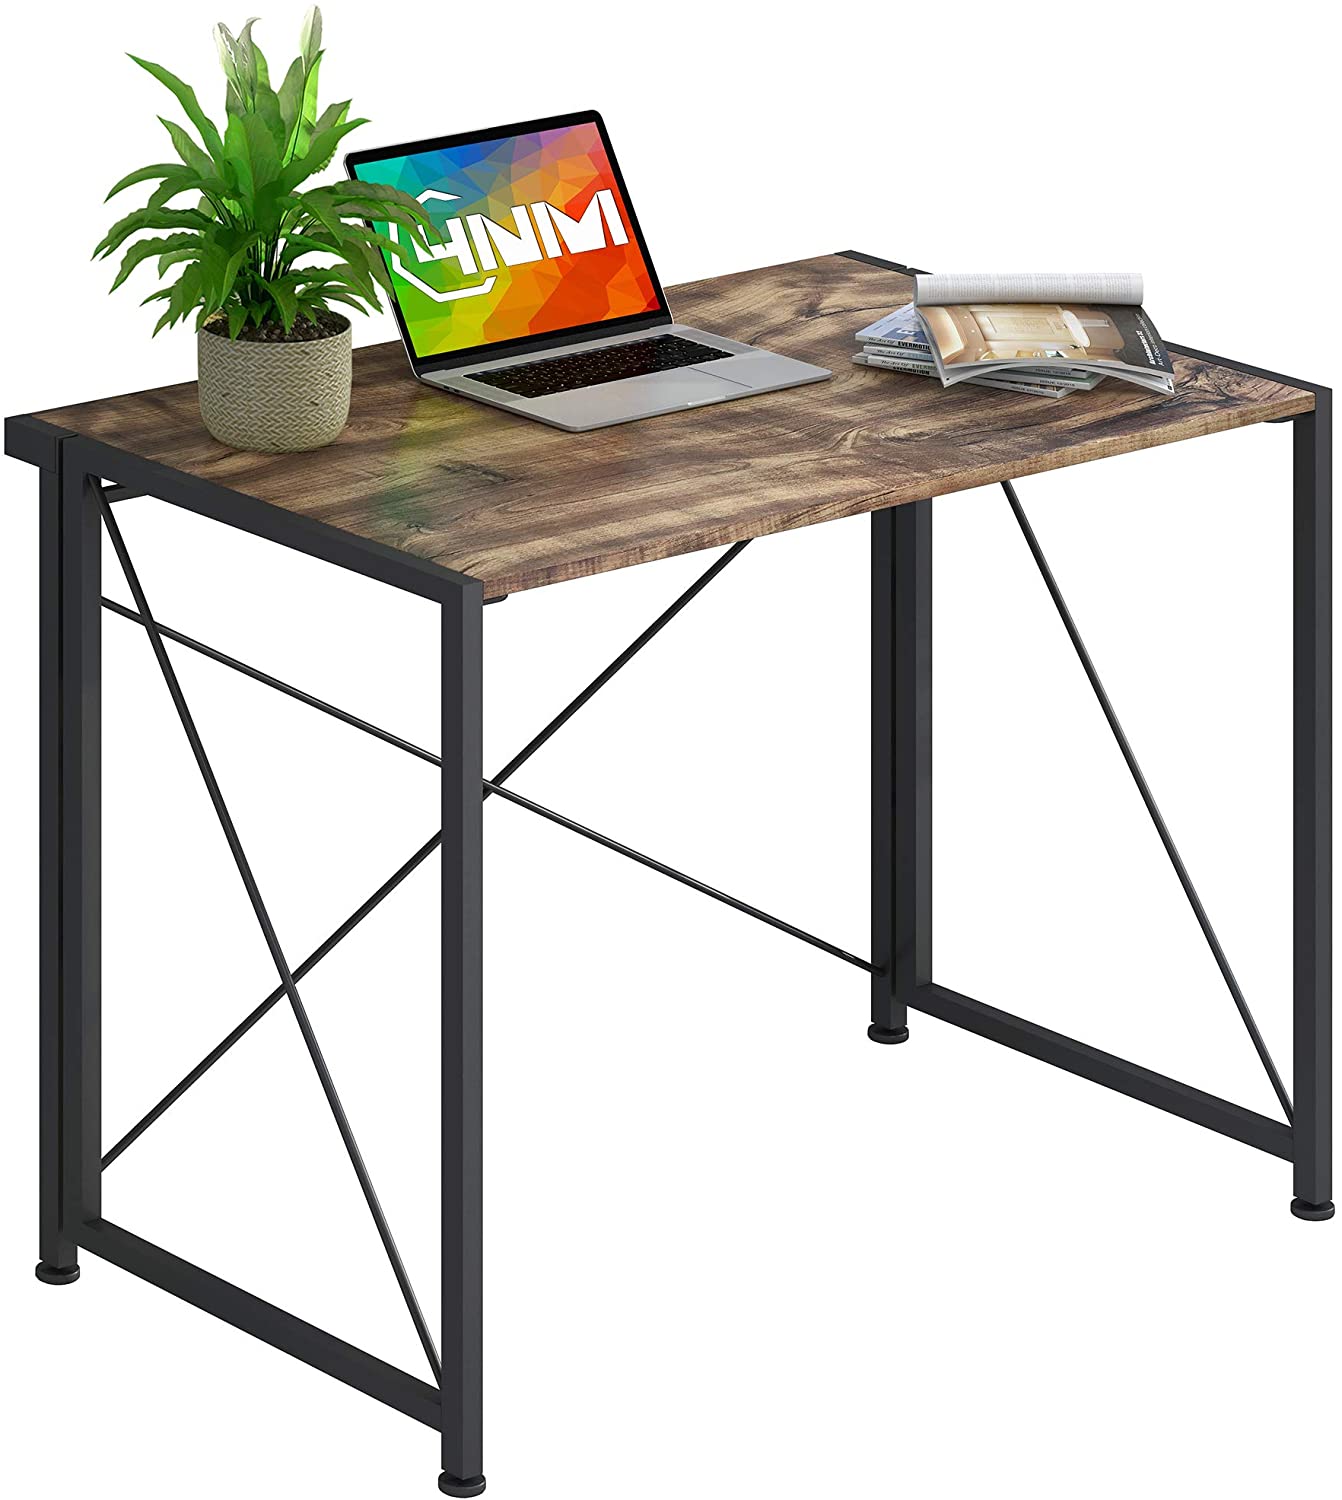 Celý černý malý stůl bez sestavení skládací počítač PC stůl domácí kancelářský stůl laptop studijní psací stůl pro úsporu místa